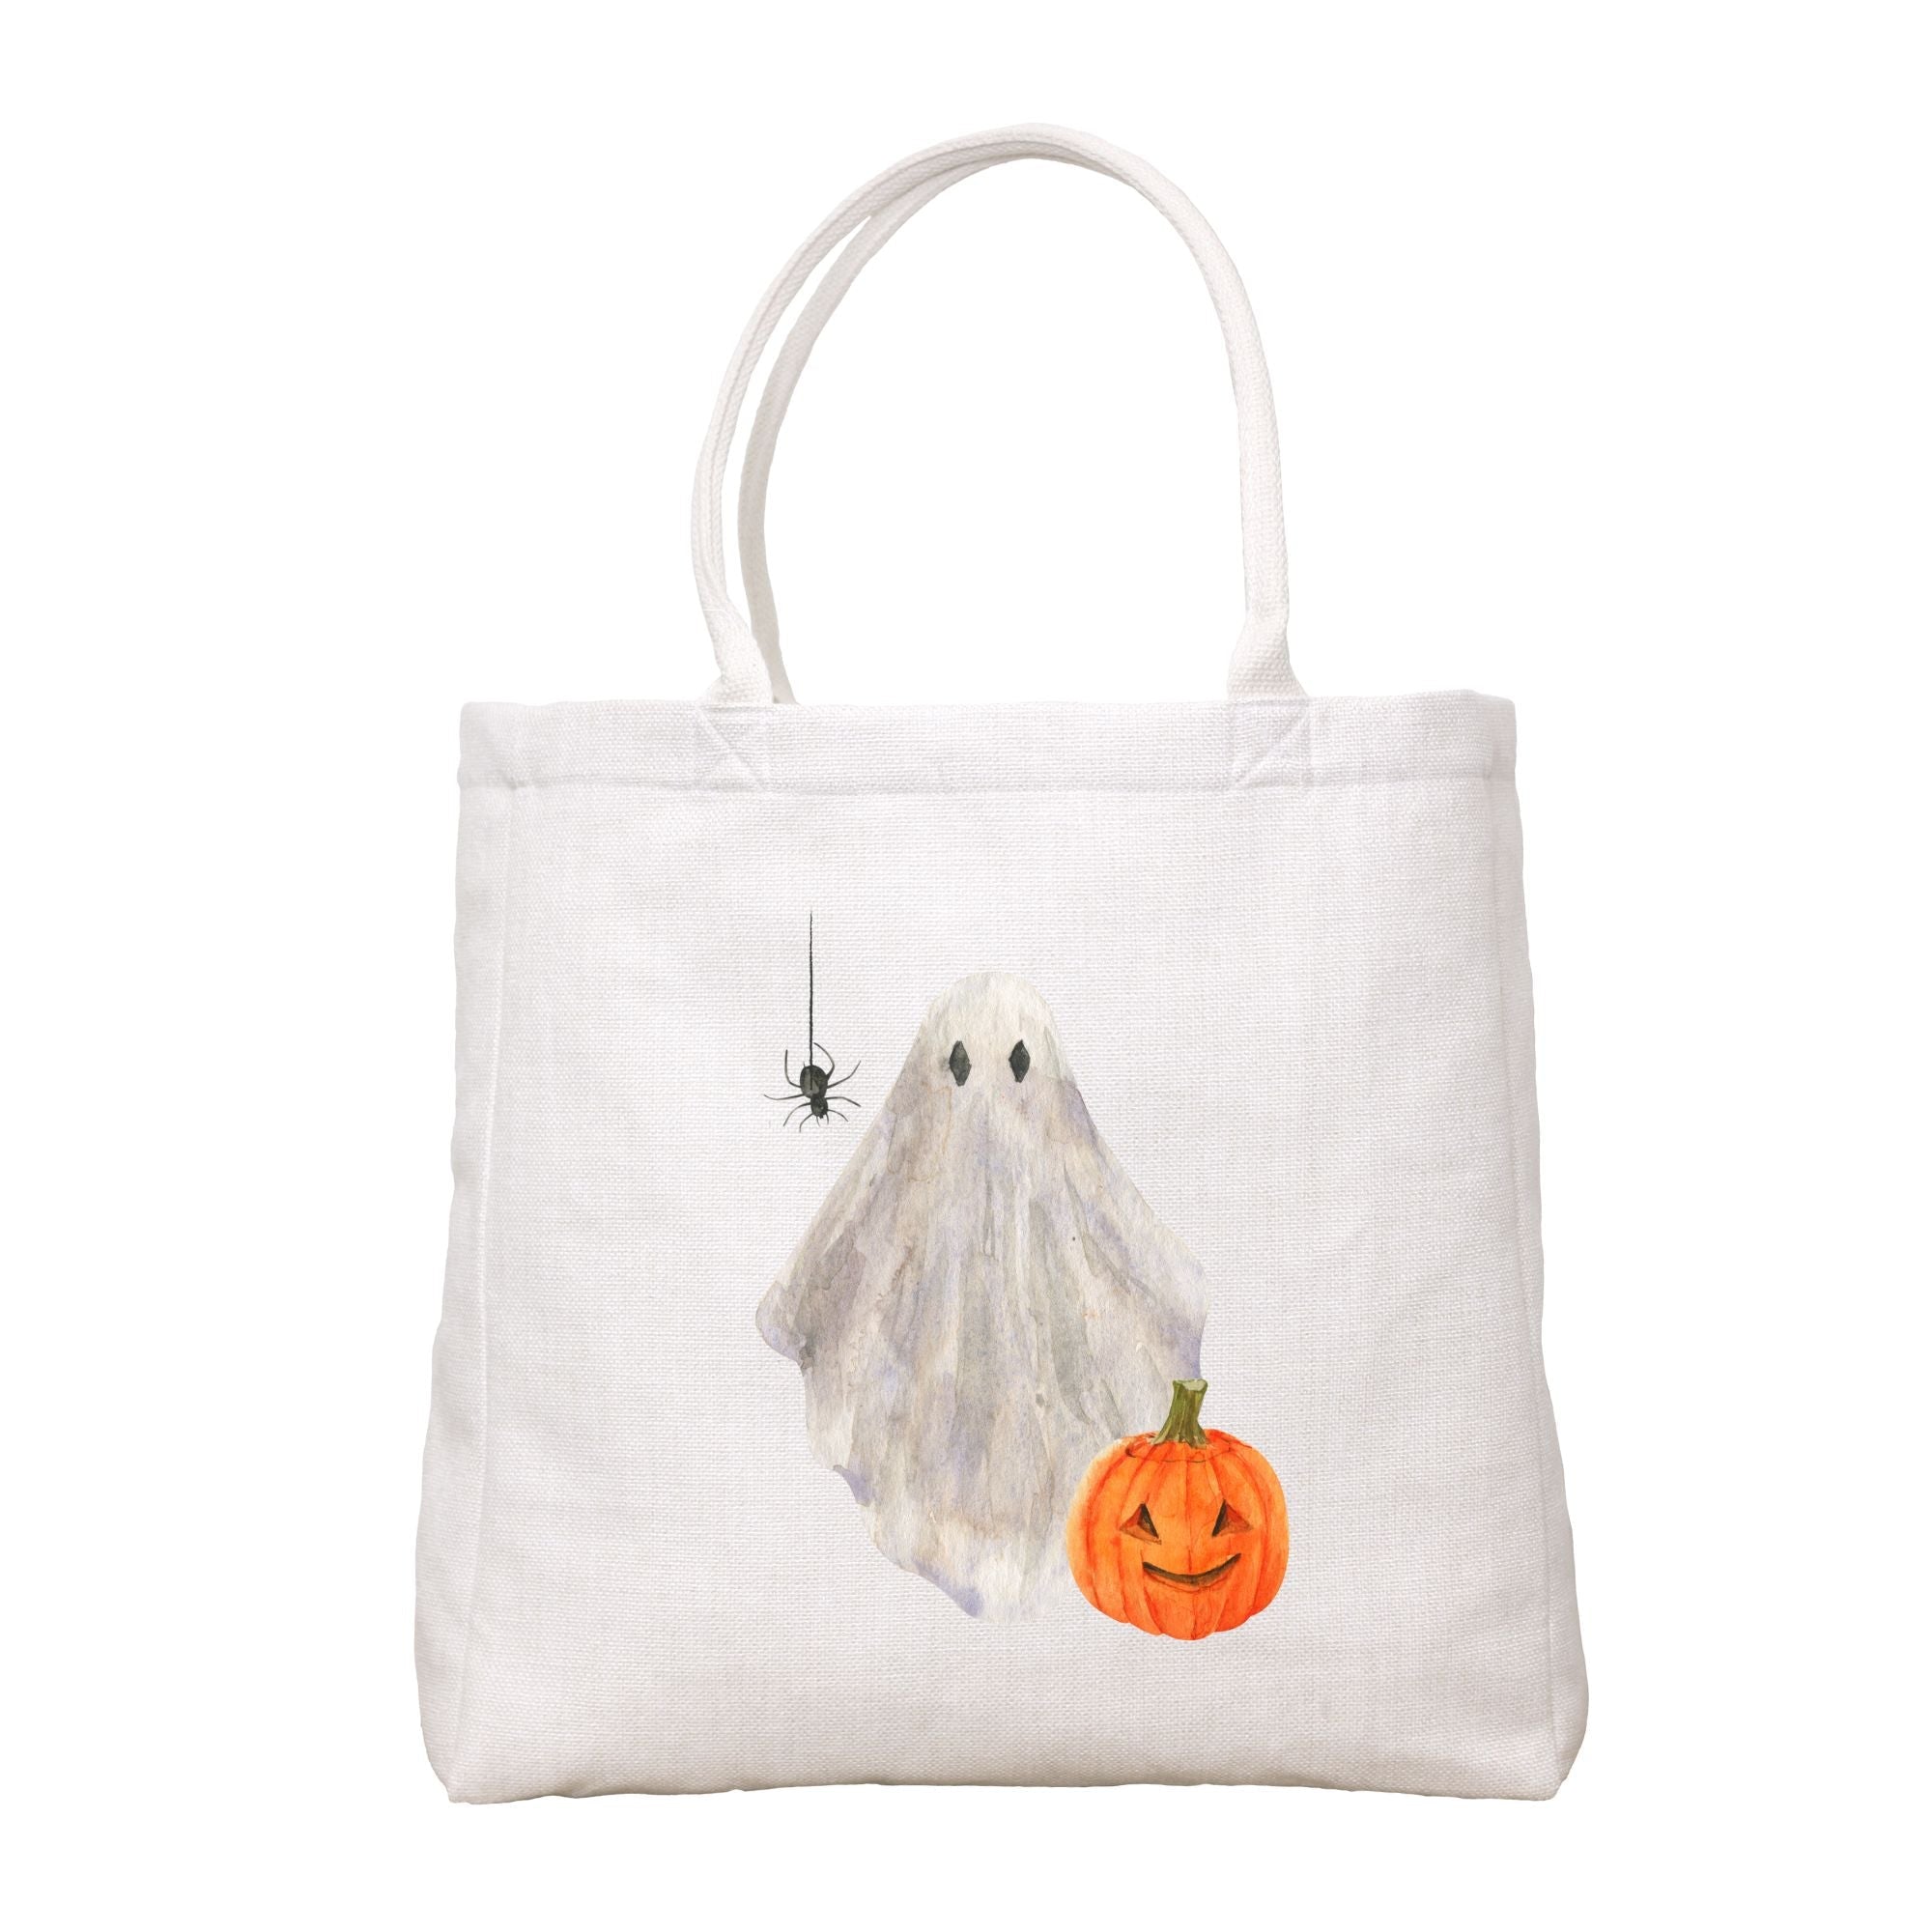 Ghost Tote Bag